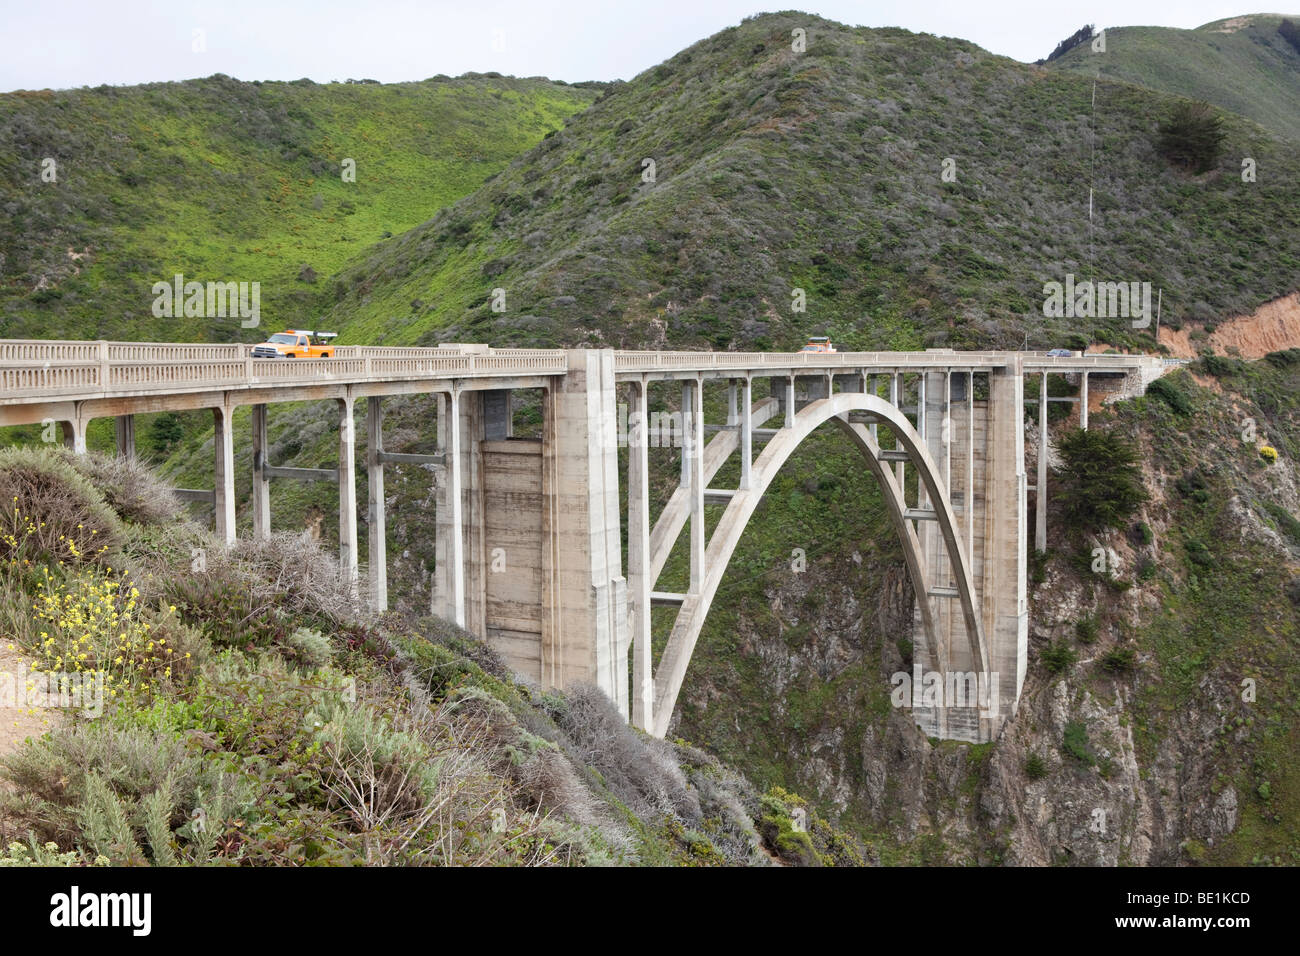 Bixby Bridge along the 'Big Sur' on the central California coast, USA Stock Photo